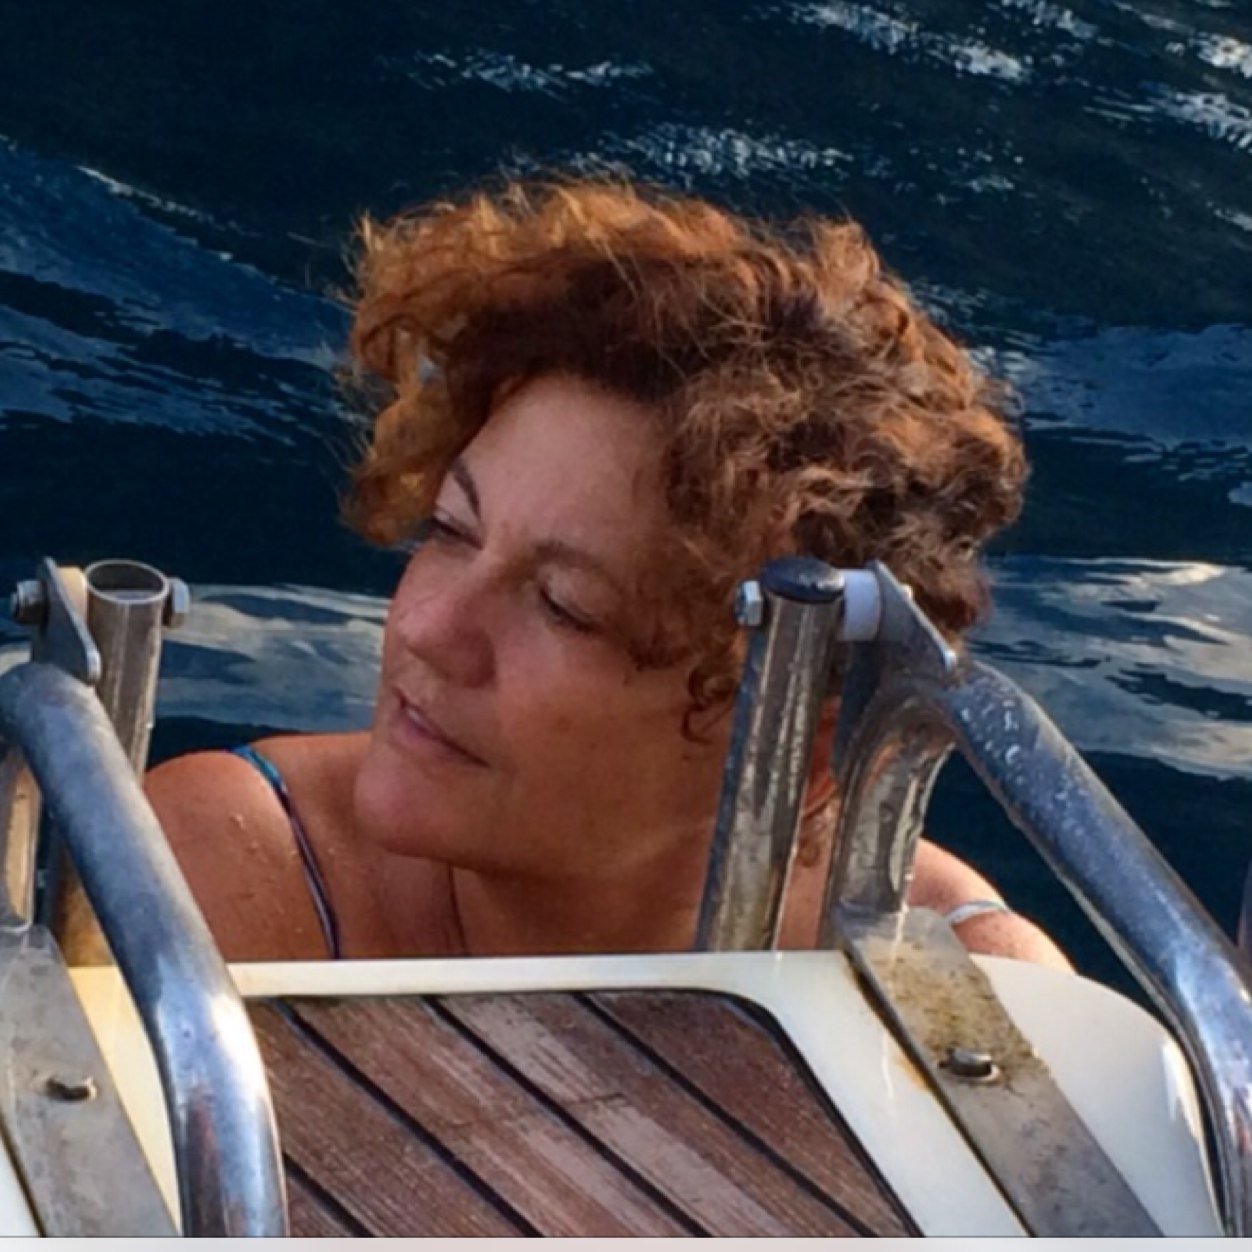 giornalista Mediaset, tifosa del Napoli, appassionata di cucina e amante del mare. Quello del golfo di Napoli e della sua Ischia. Cinguettii a titolo personale